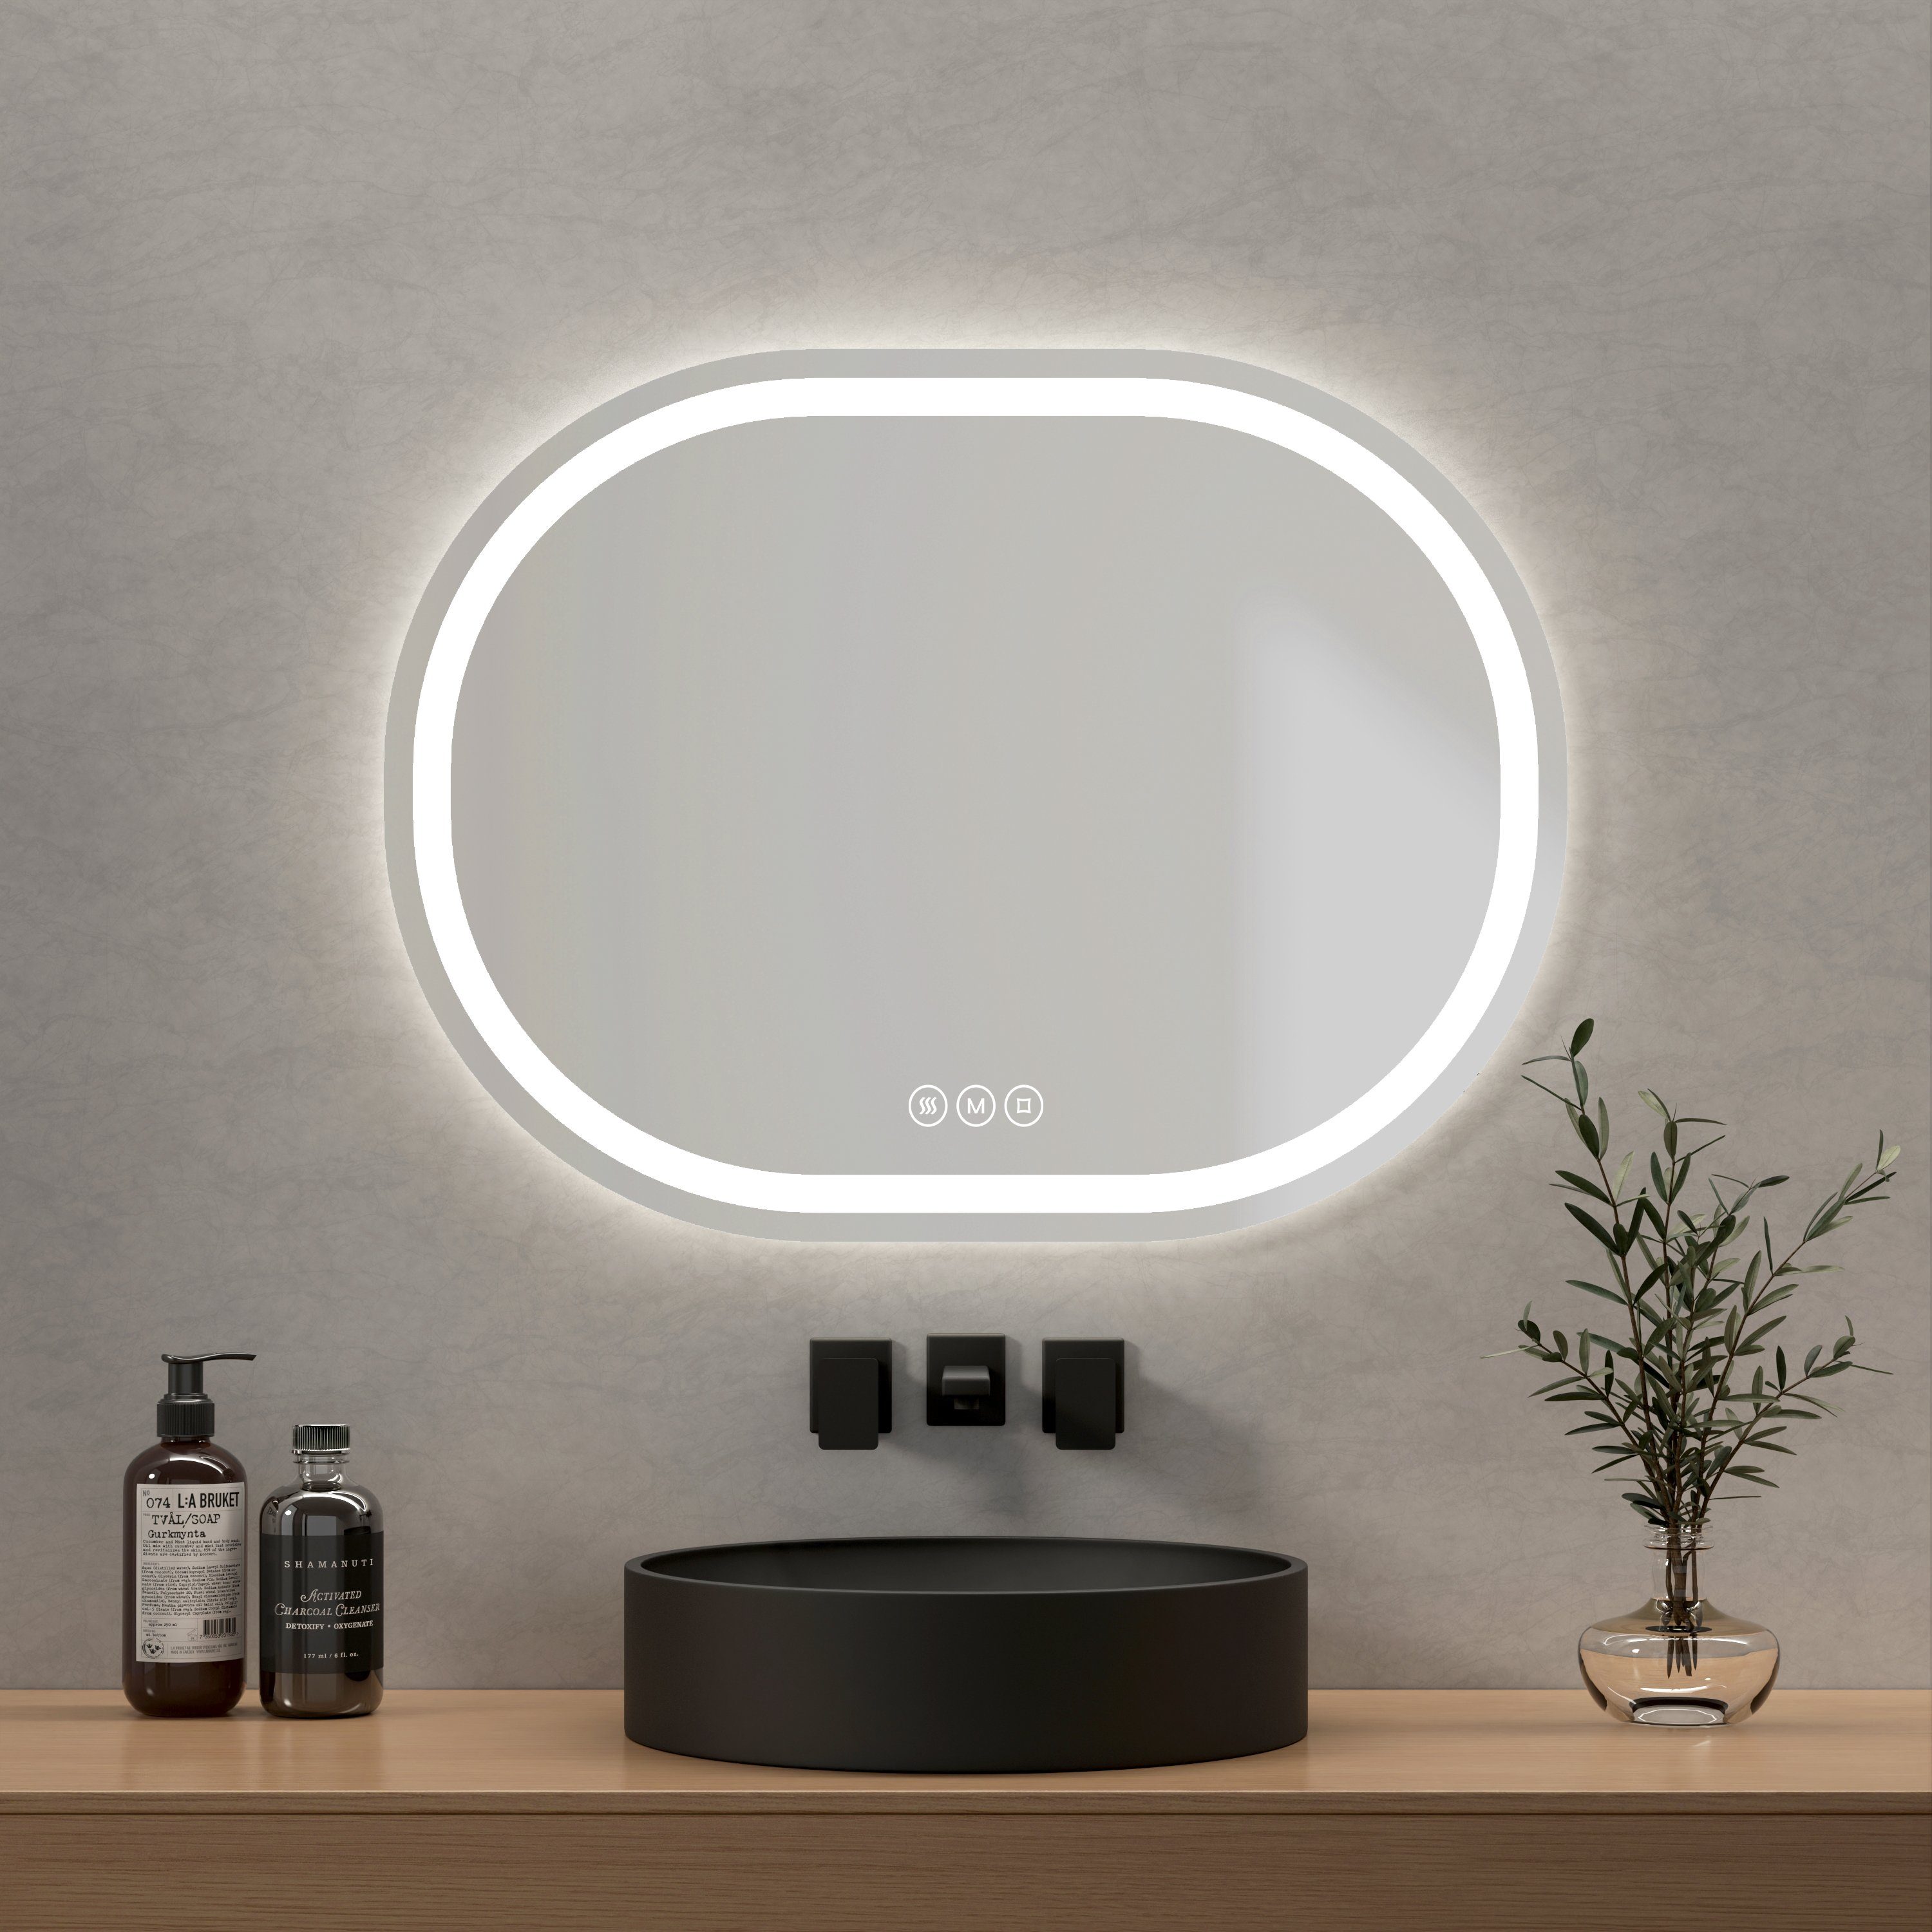 EMKE Badspiegel Oval Badspiegel mit Beleuchtung LED Badezimmerspiegel, mit Touchschalter, 3 Lichtfarben dimmbar, Beschlagfrei